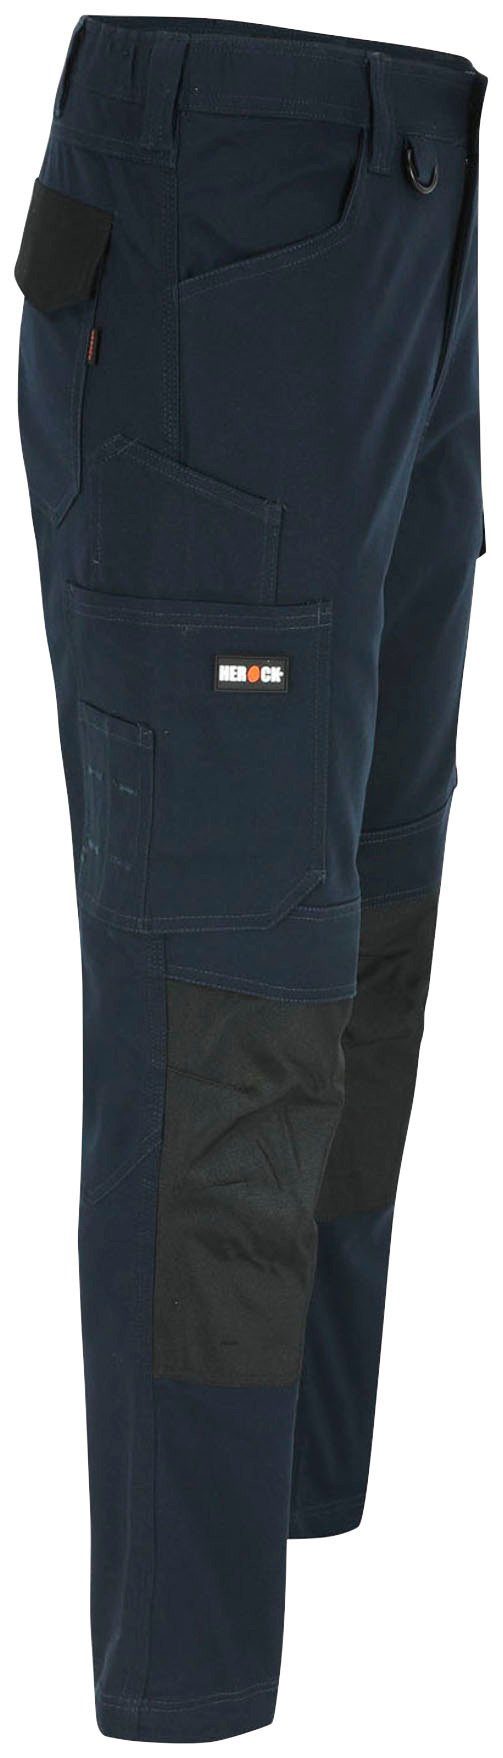 Herock Arbeitshose DERO Slim 2-Wege-Stretch, Passform, Fit marine Multi-Pocket, wasserabweisend